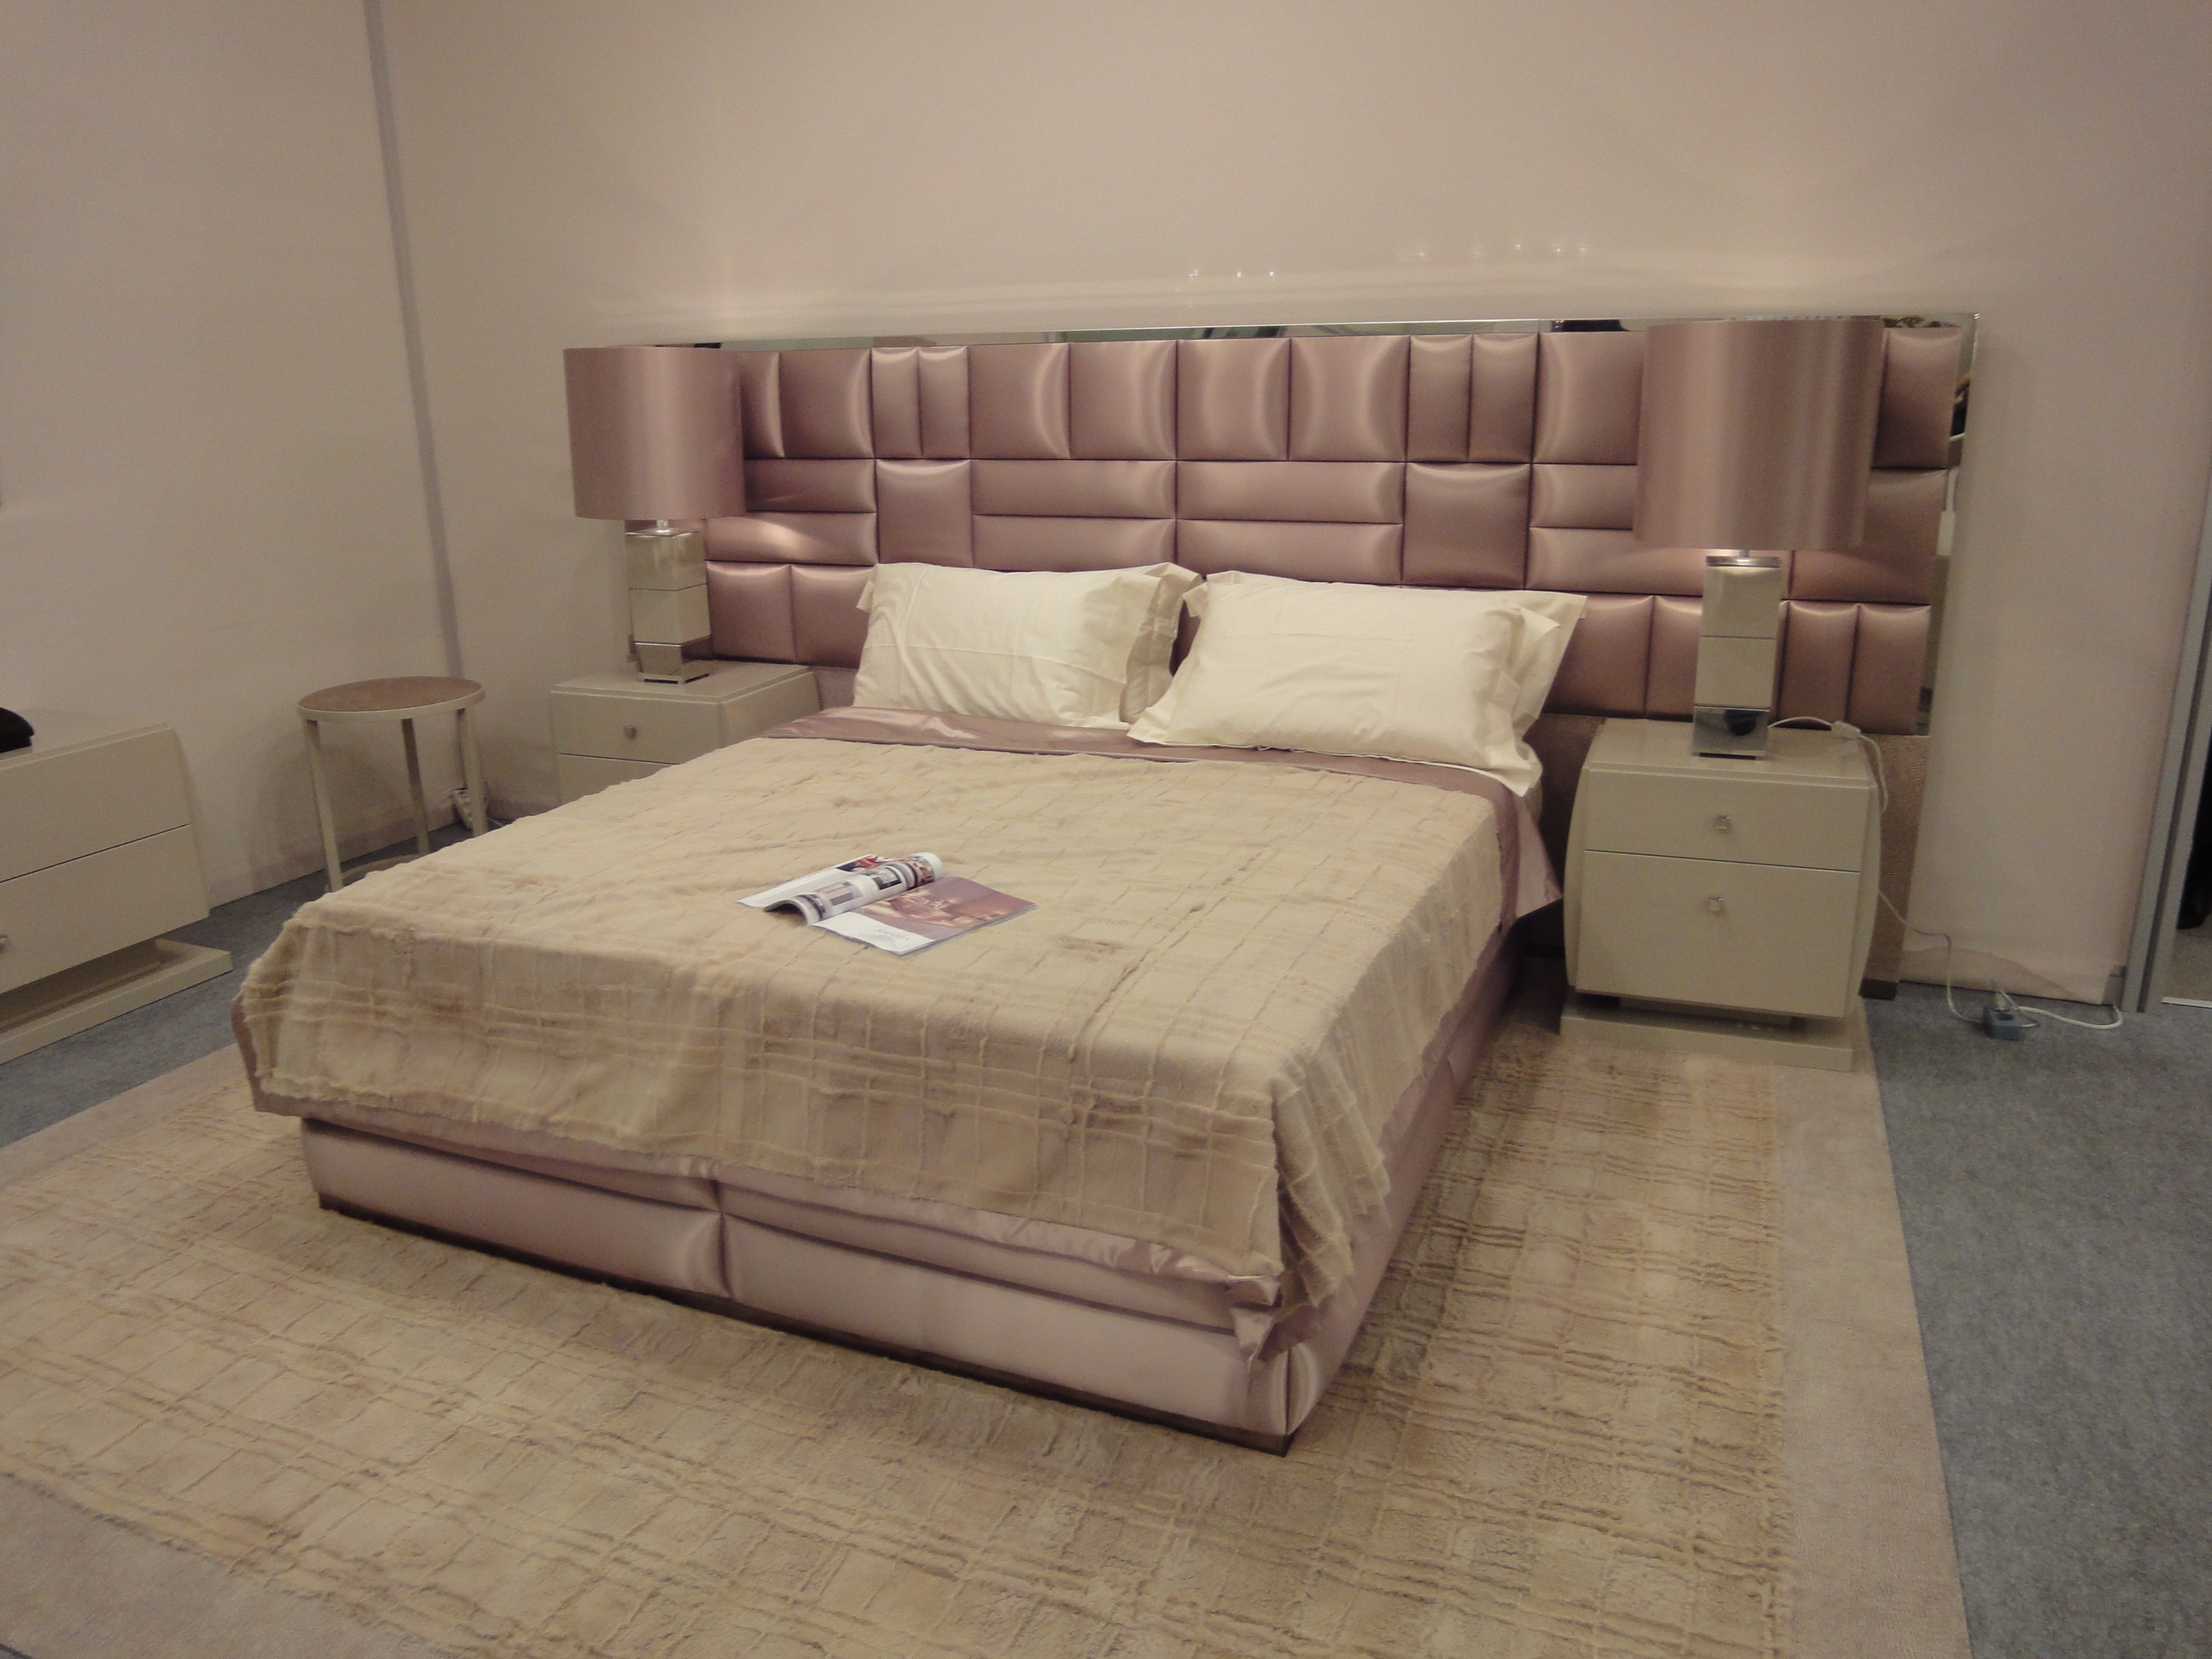 Кровать, стиль арт-деко, дизайн Smania, модель Essence